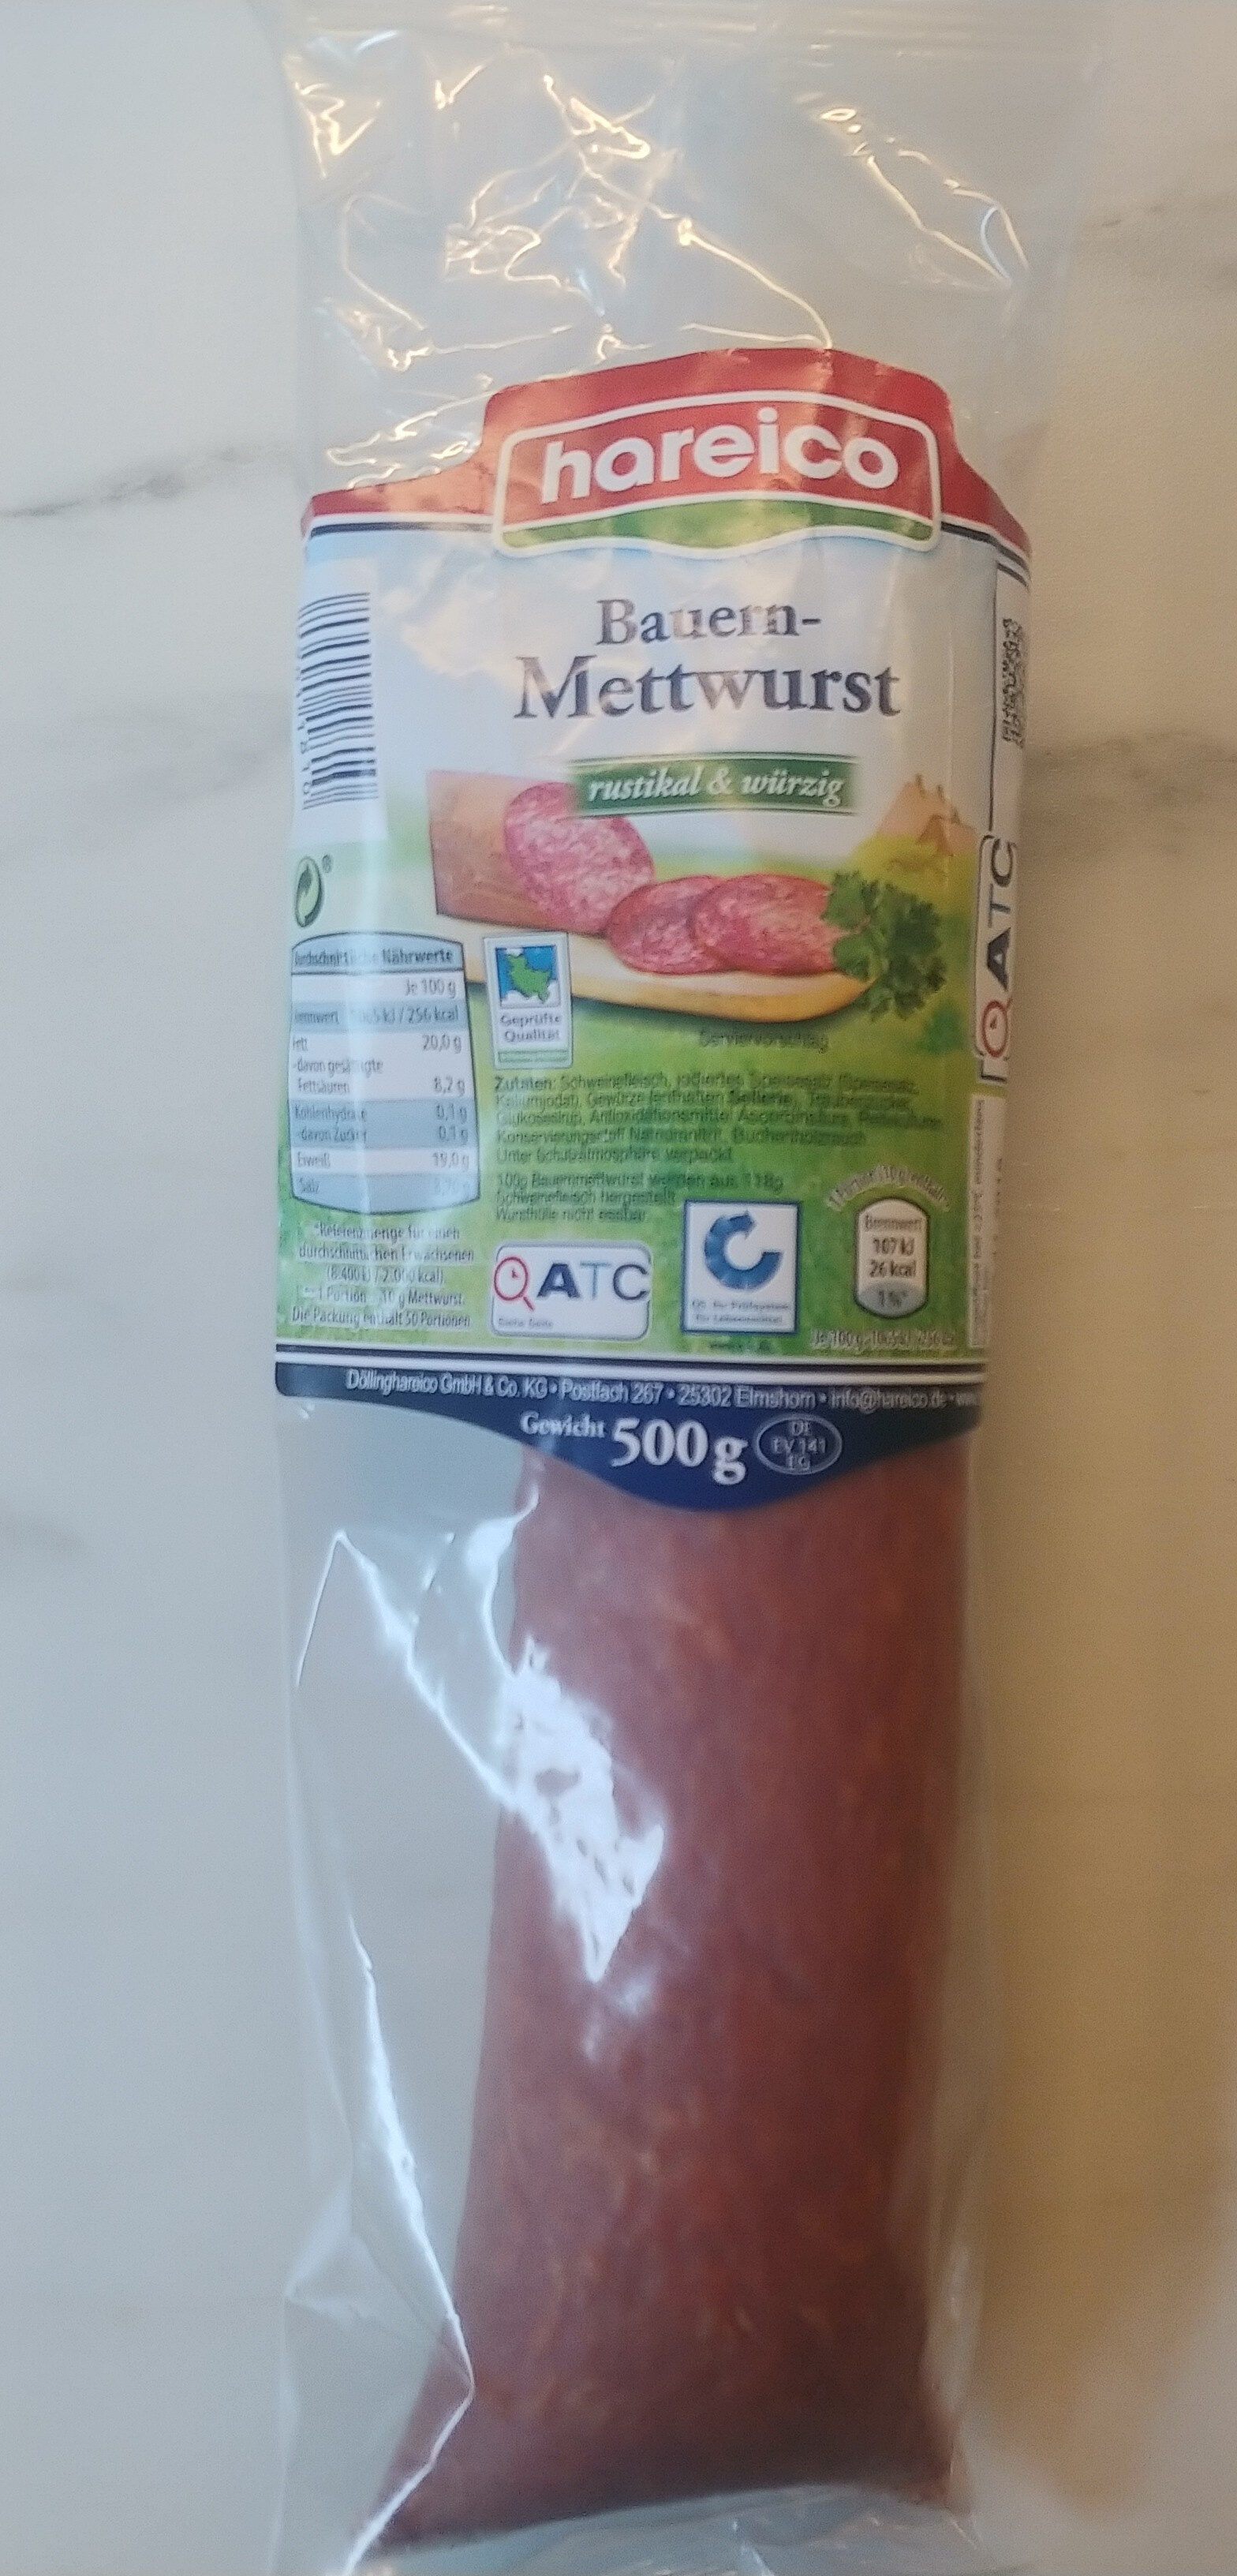 Bauern-Mettwurst - Product - de